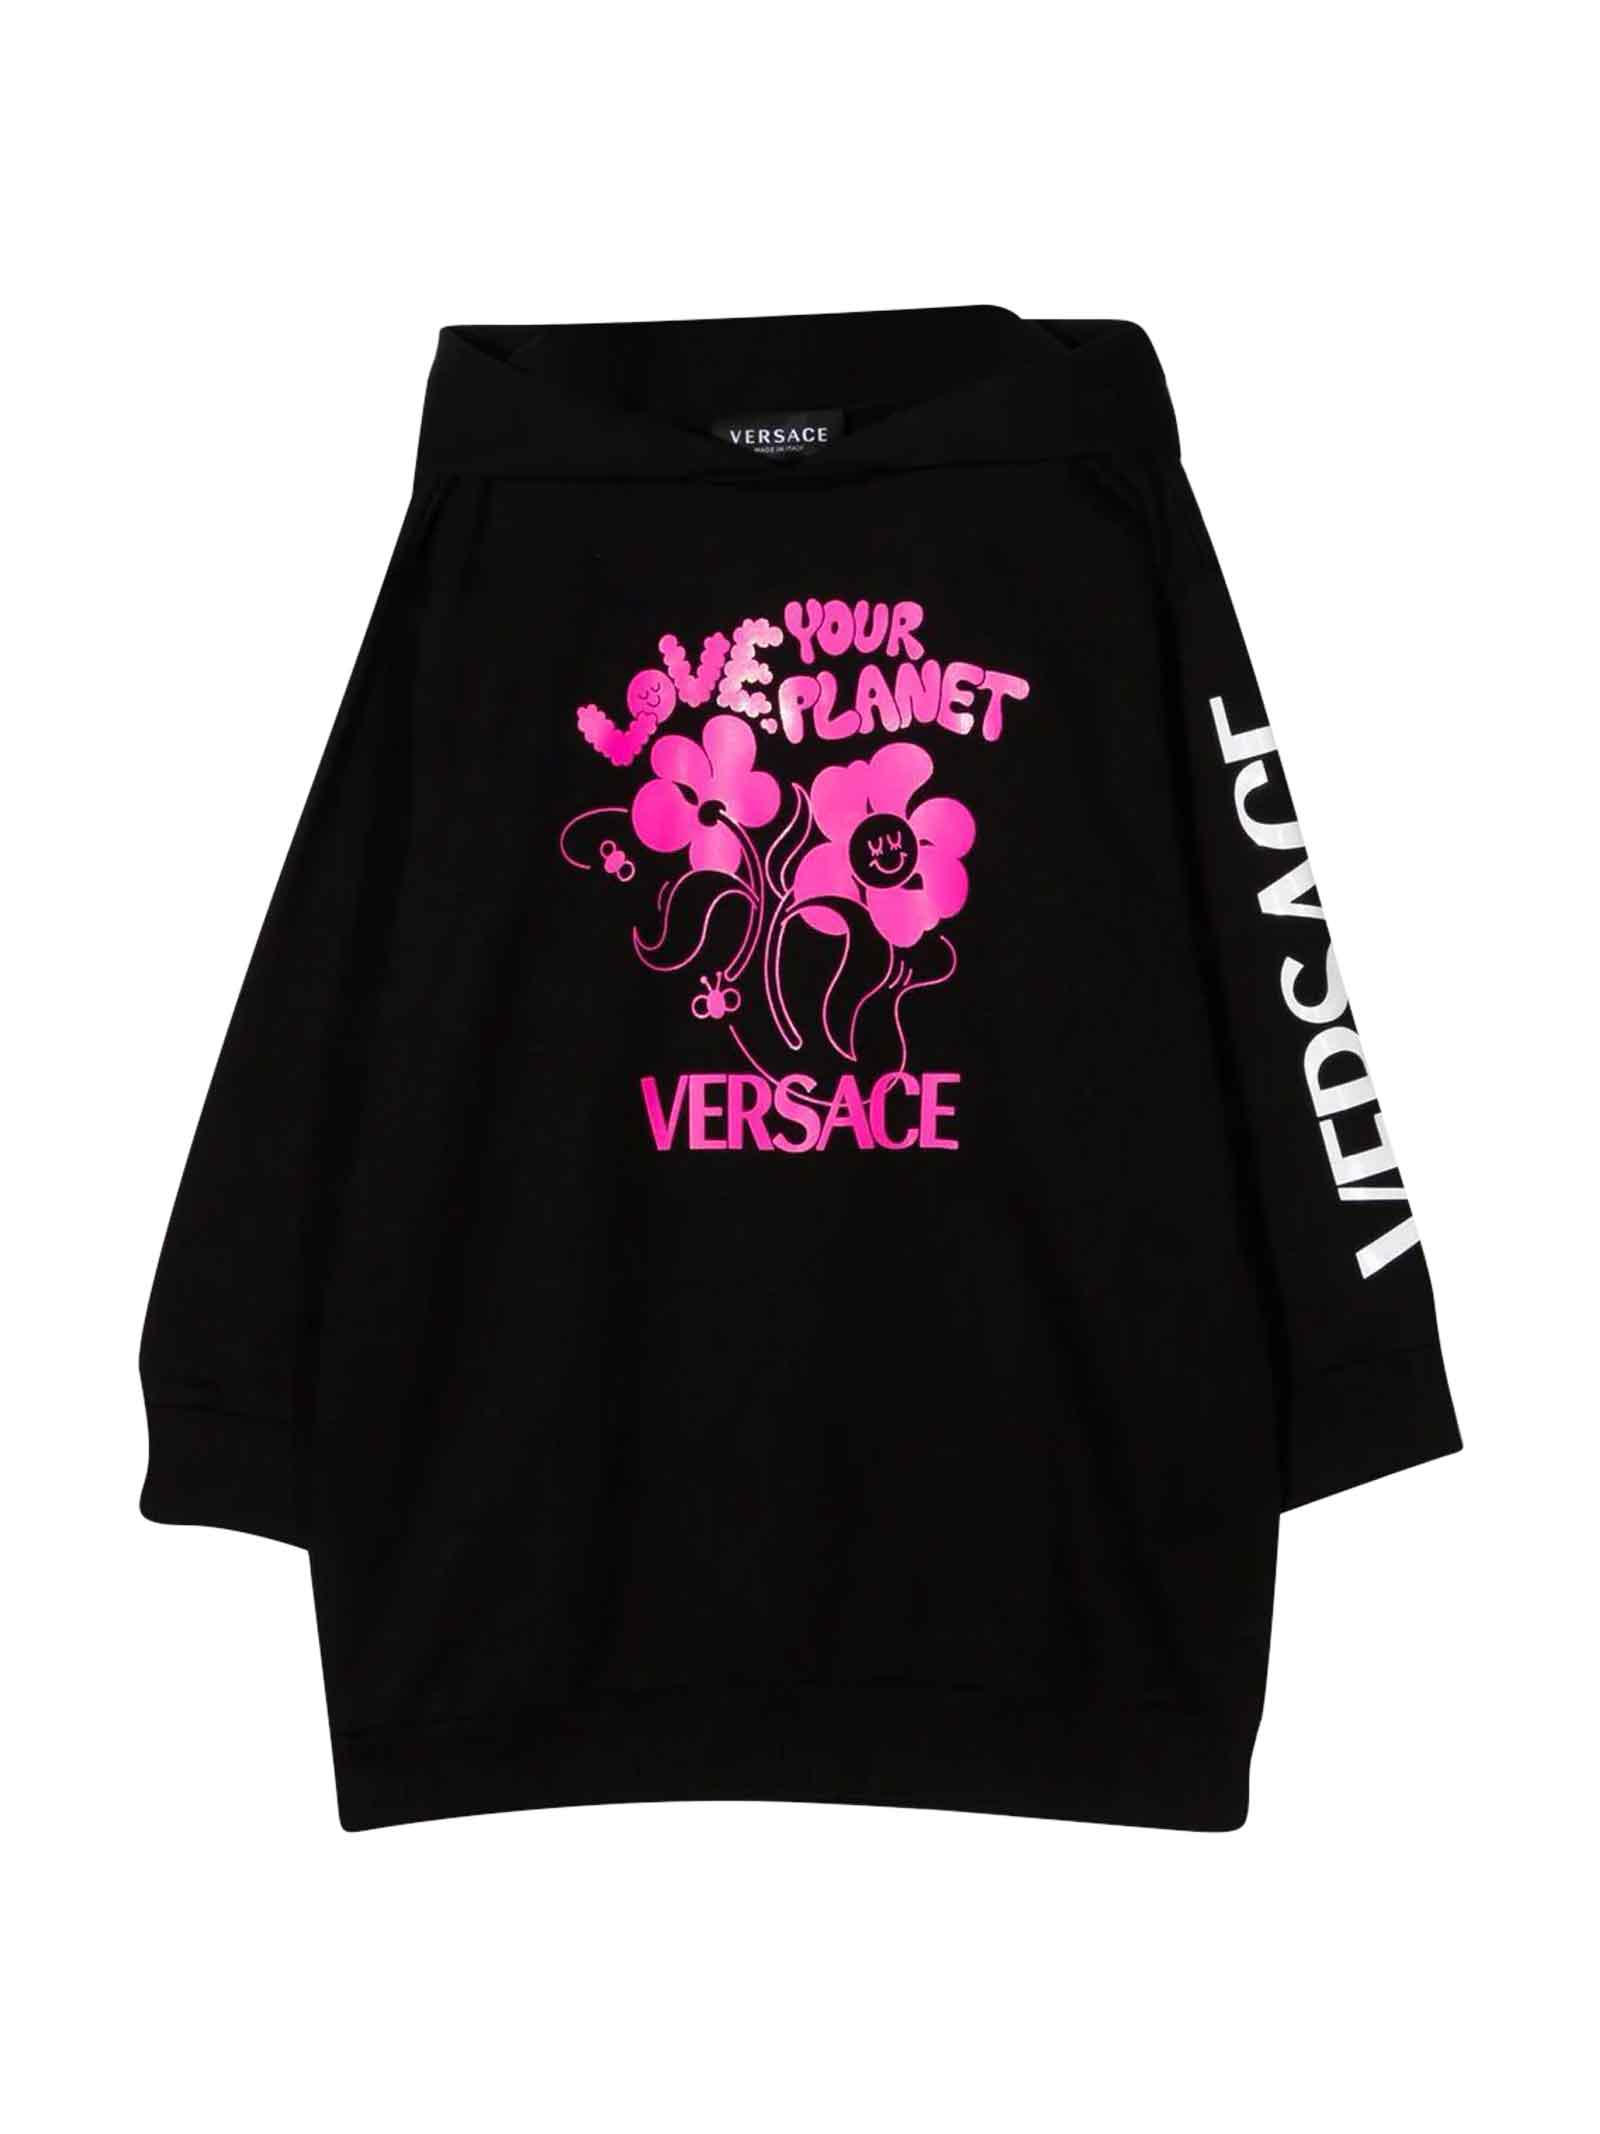 Versace Black Dress Girl Kids